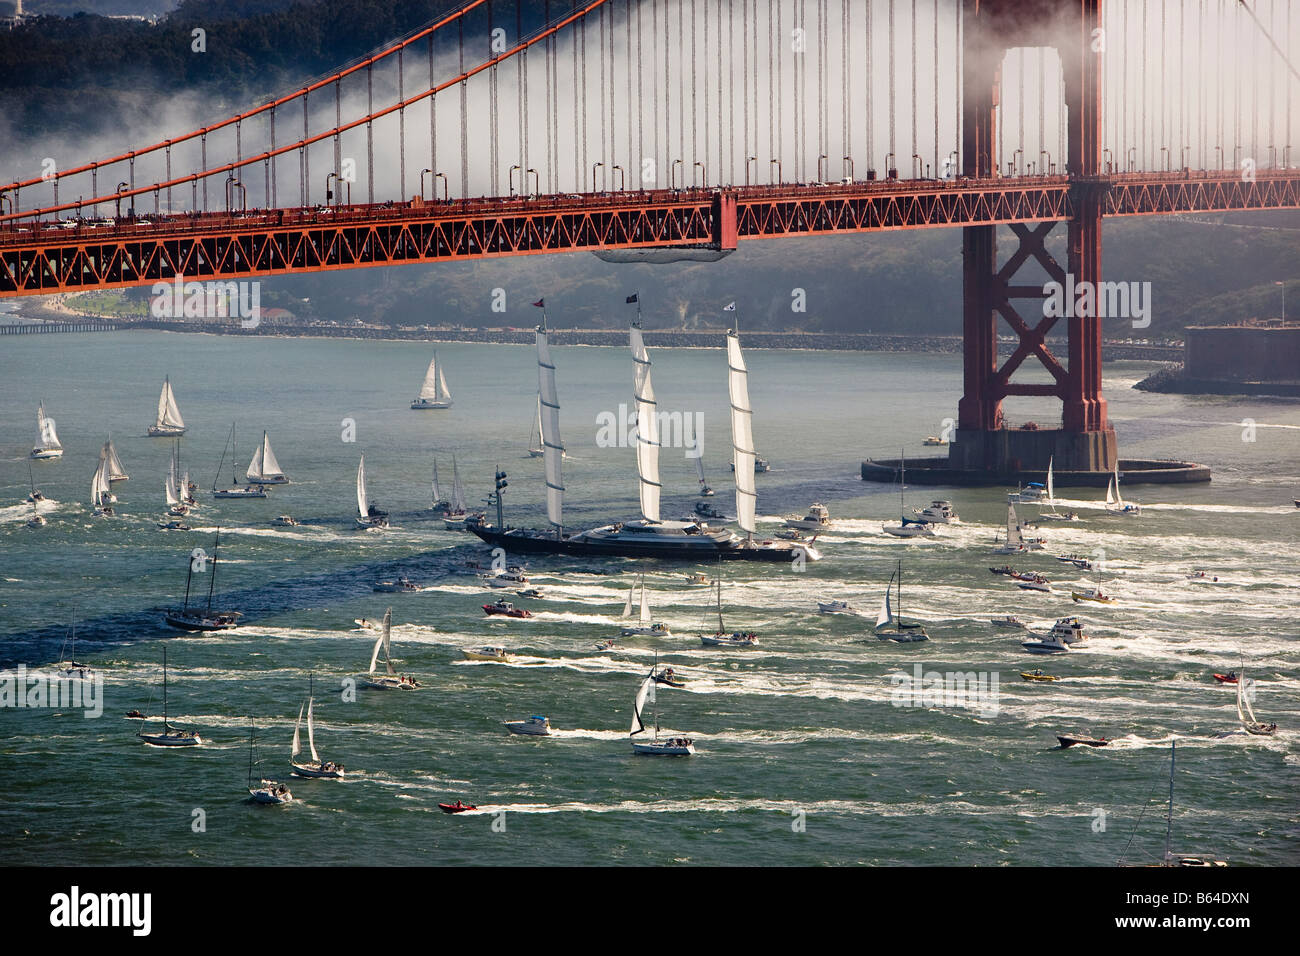 Maltese Falcon private yacht à voile entre dans la baie de San Francisco sous le Golden Gate Bridge Banque D'Images